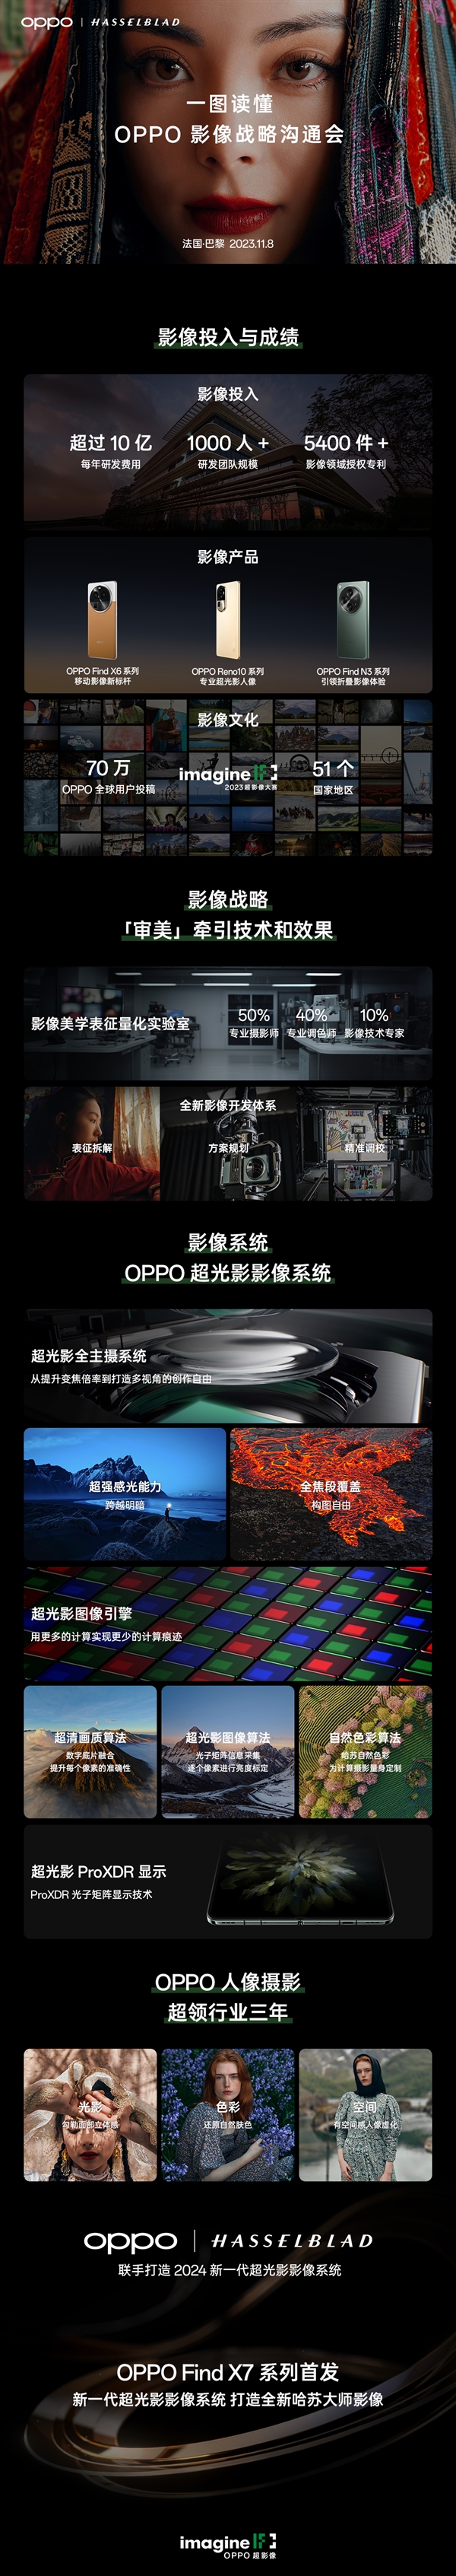 一图了解OPPO超光影影像系统：OPPO Find X7系列首发